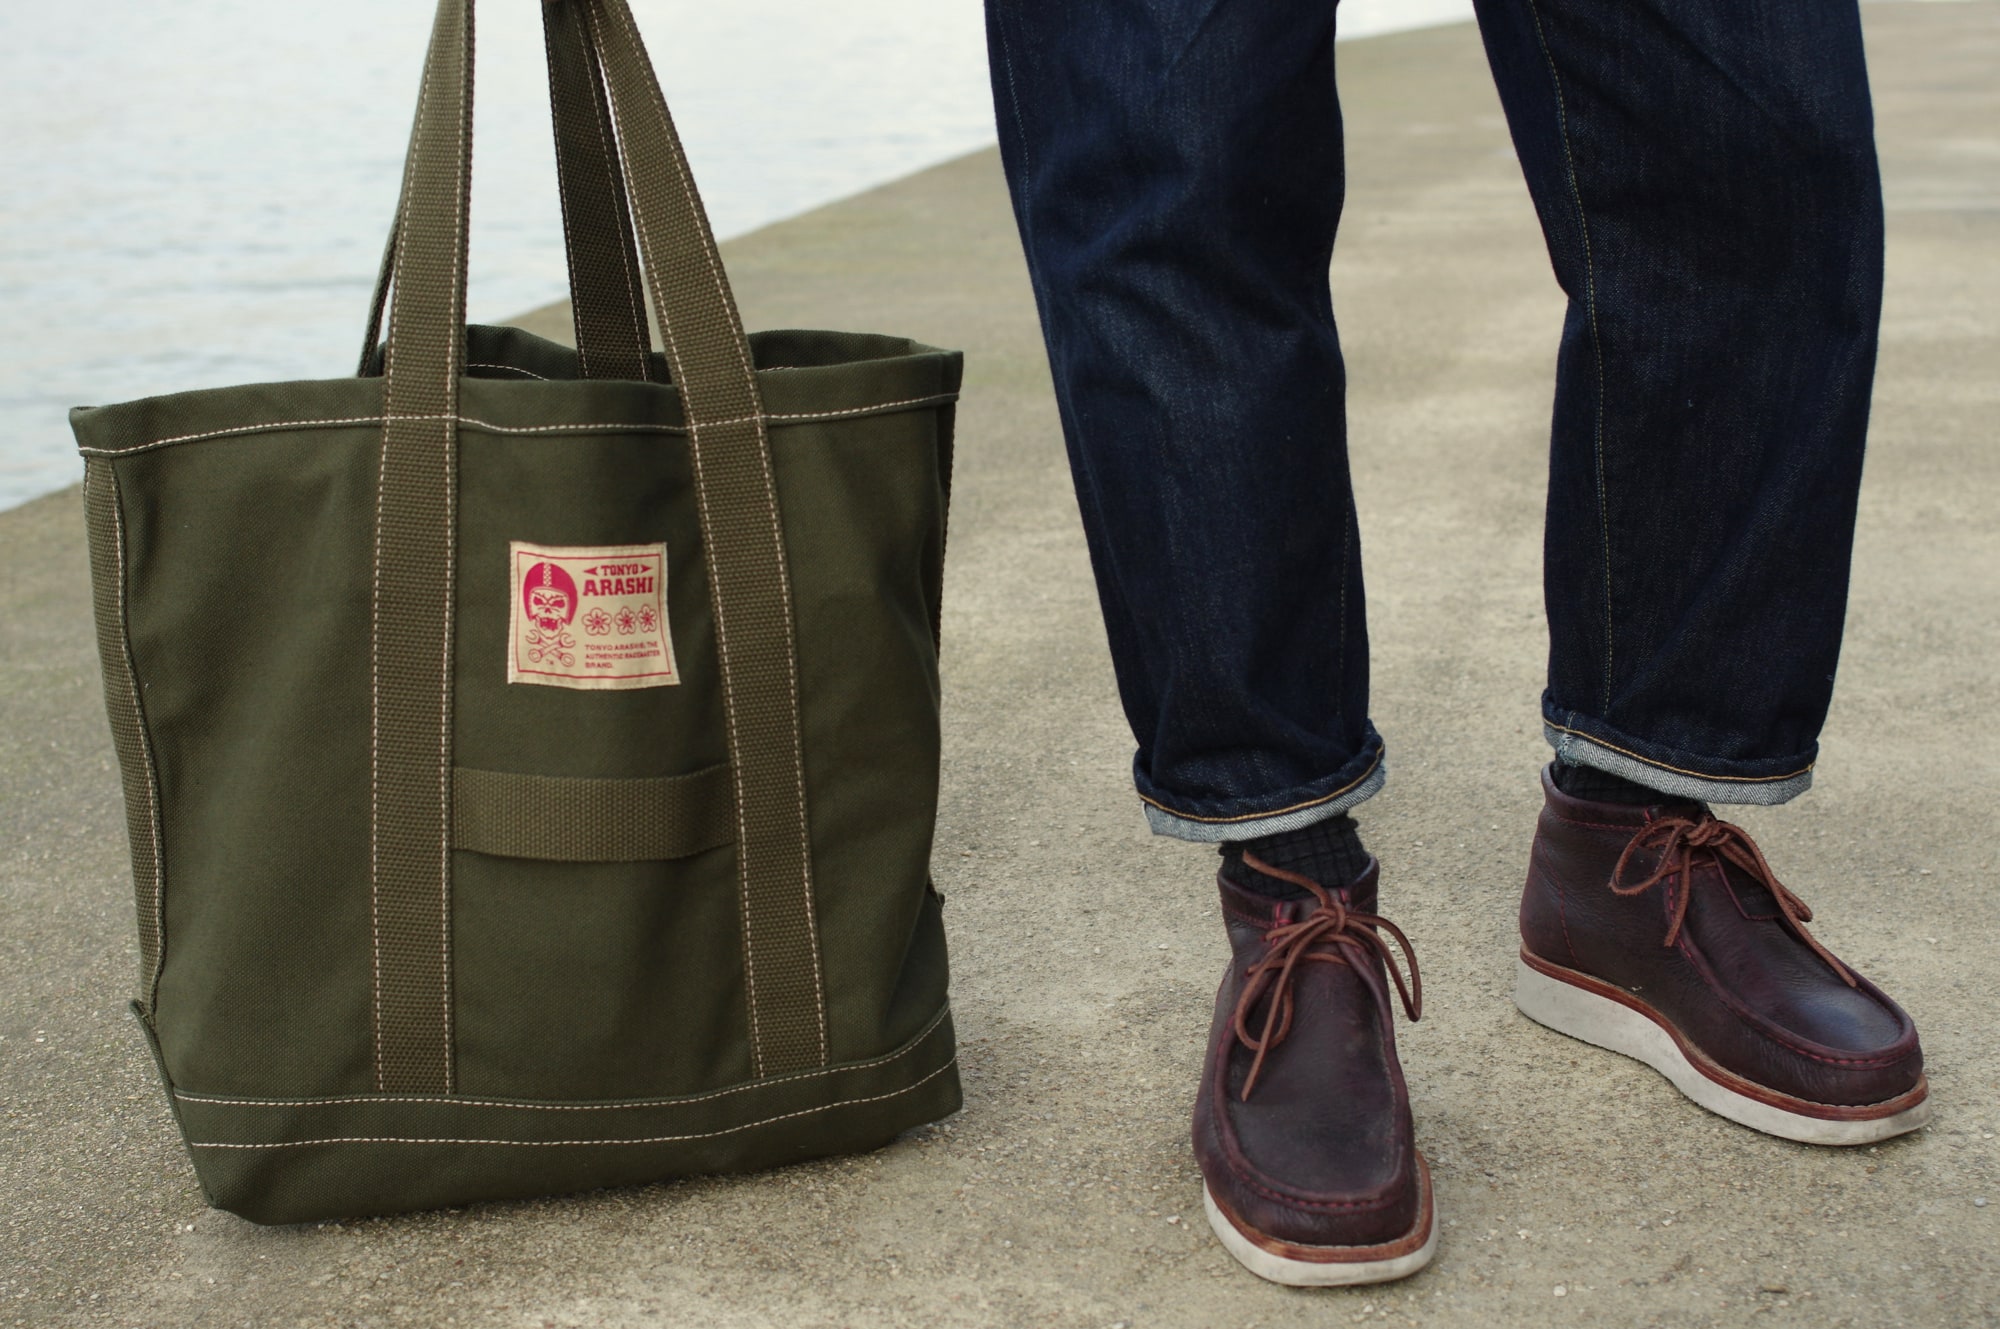 sac cabas tote bag d'inspiration militaire arashi denim idée sac à bandoulière homme style workwear